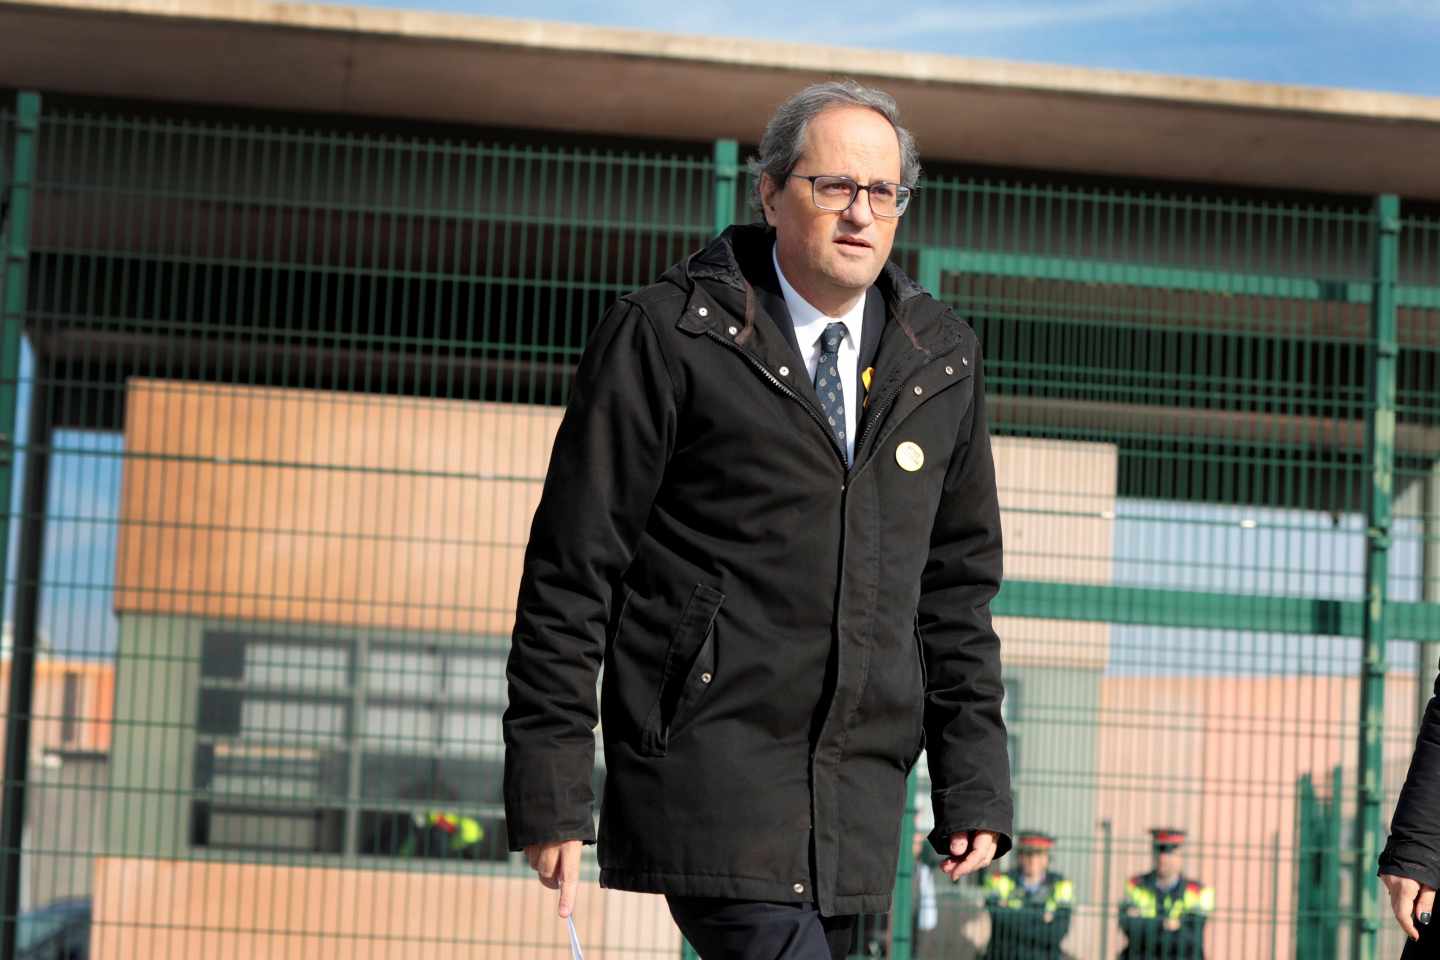 El presidente de la Generalitat, Quim Torra, a su salida del centro penitenciario de Lledoners tras visitar a los independentistas encarcelados.